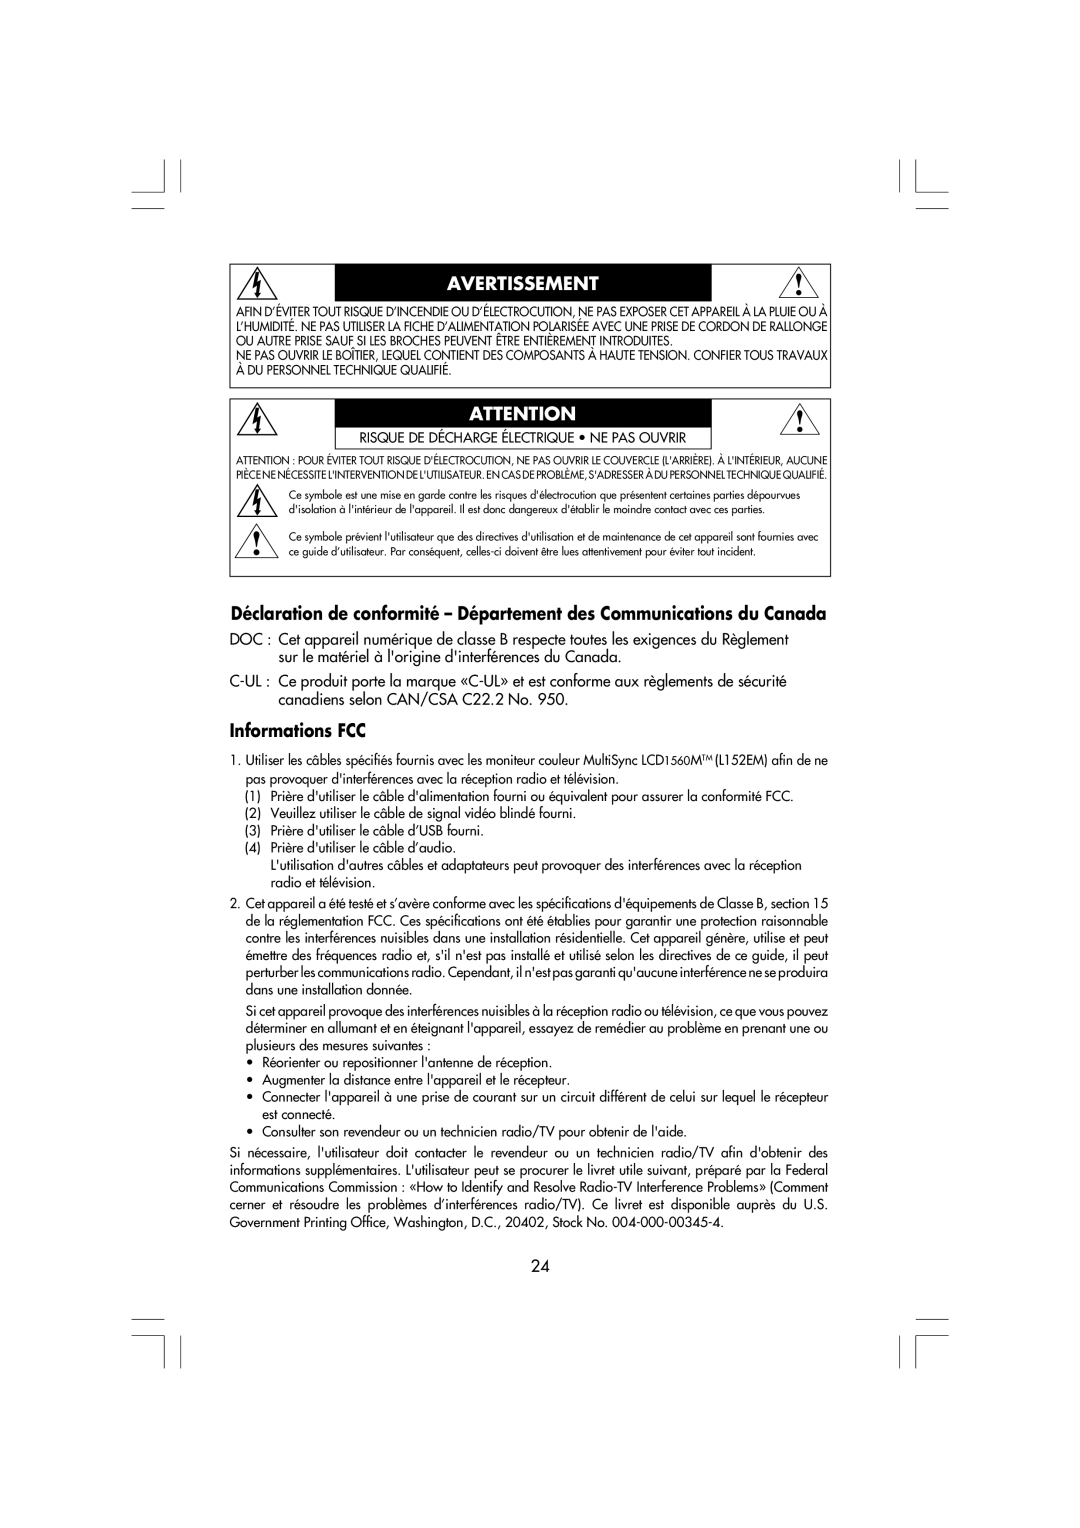 Mitsubishi Electronics LCD1560M Déclaration de conformité - Département des Communications du Canada, Informations FCC 